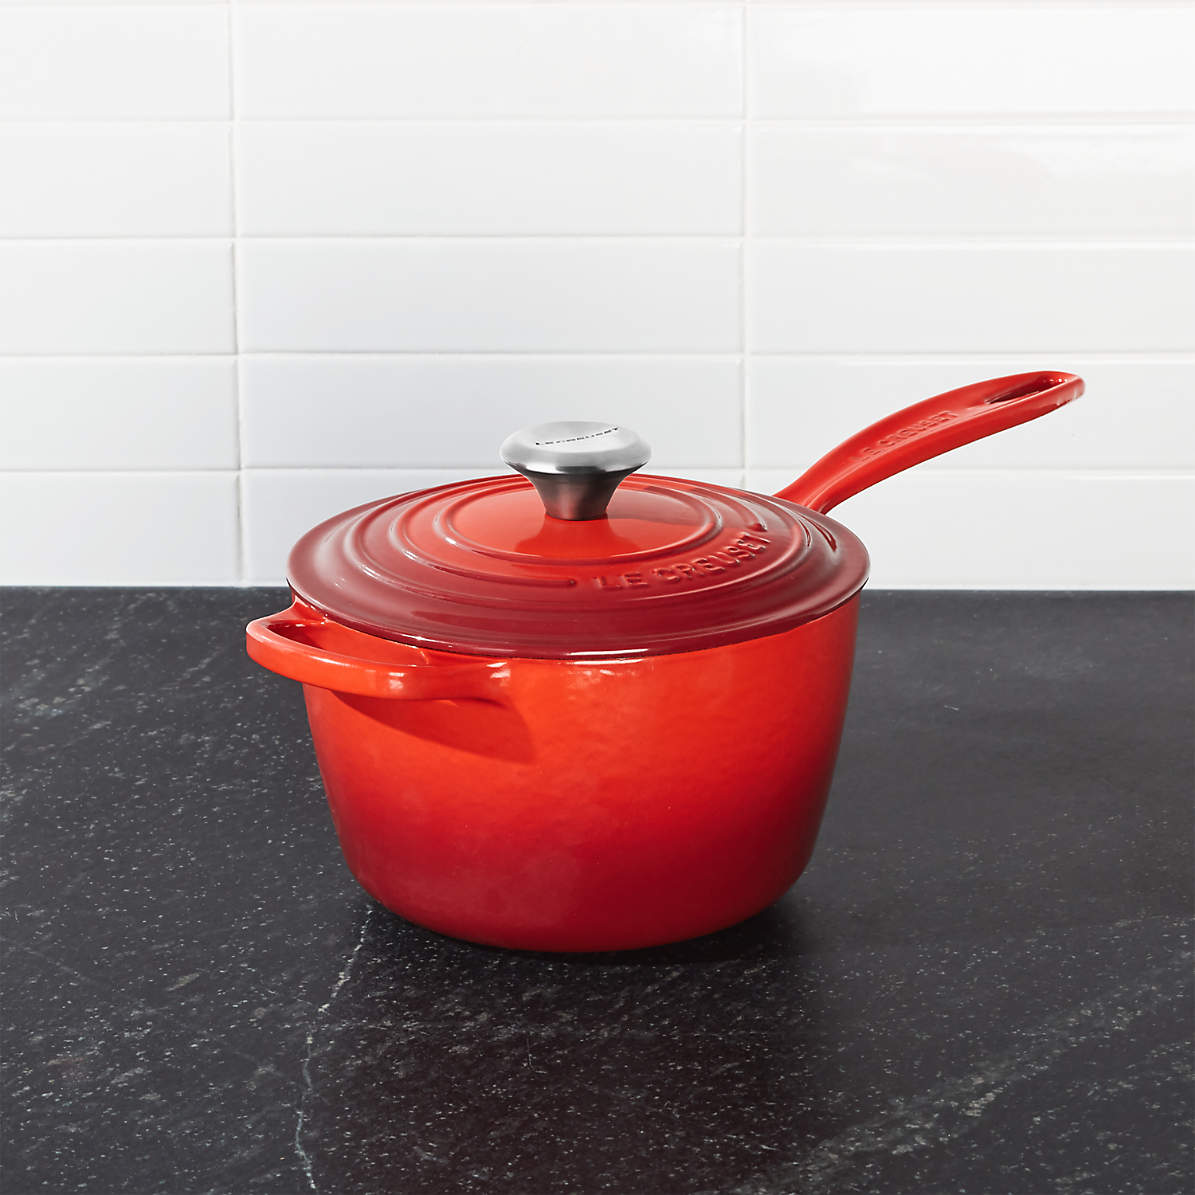  Le Creuset Enameled Cast Iron Signature Saucepan, 2.25 qt.,  Cerise: Home & Kitchen